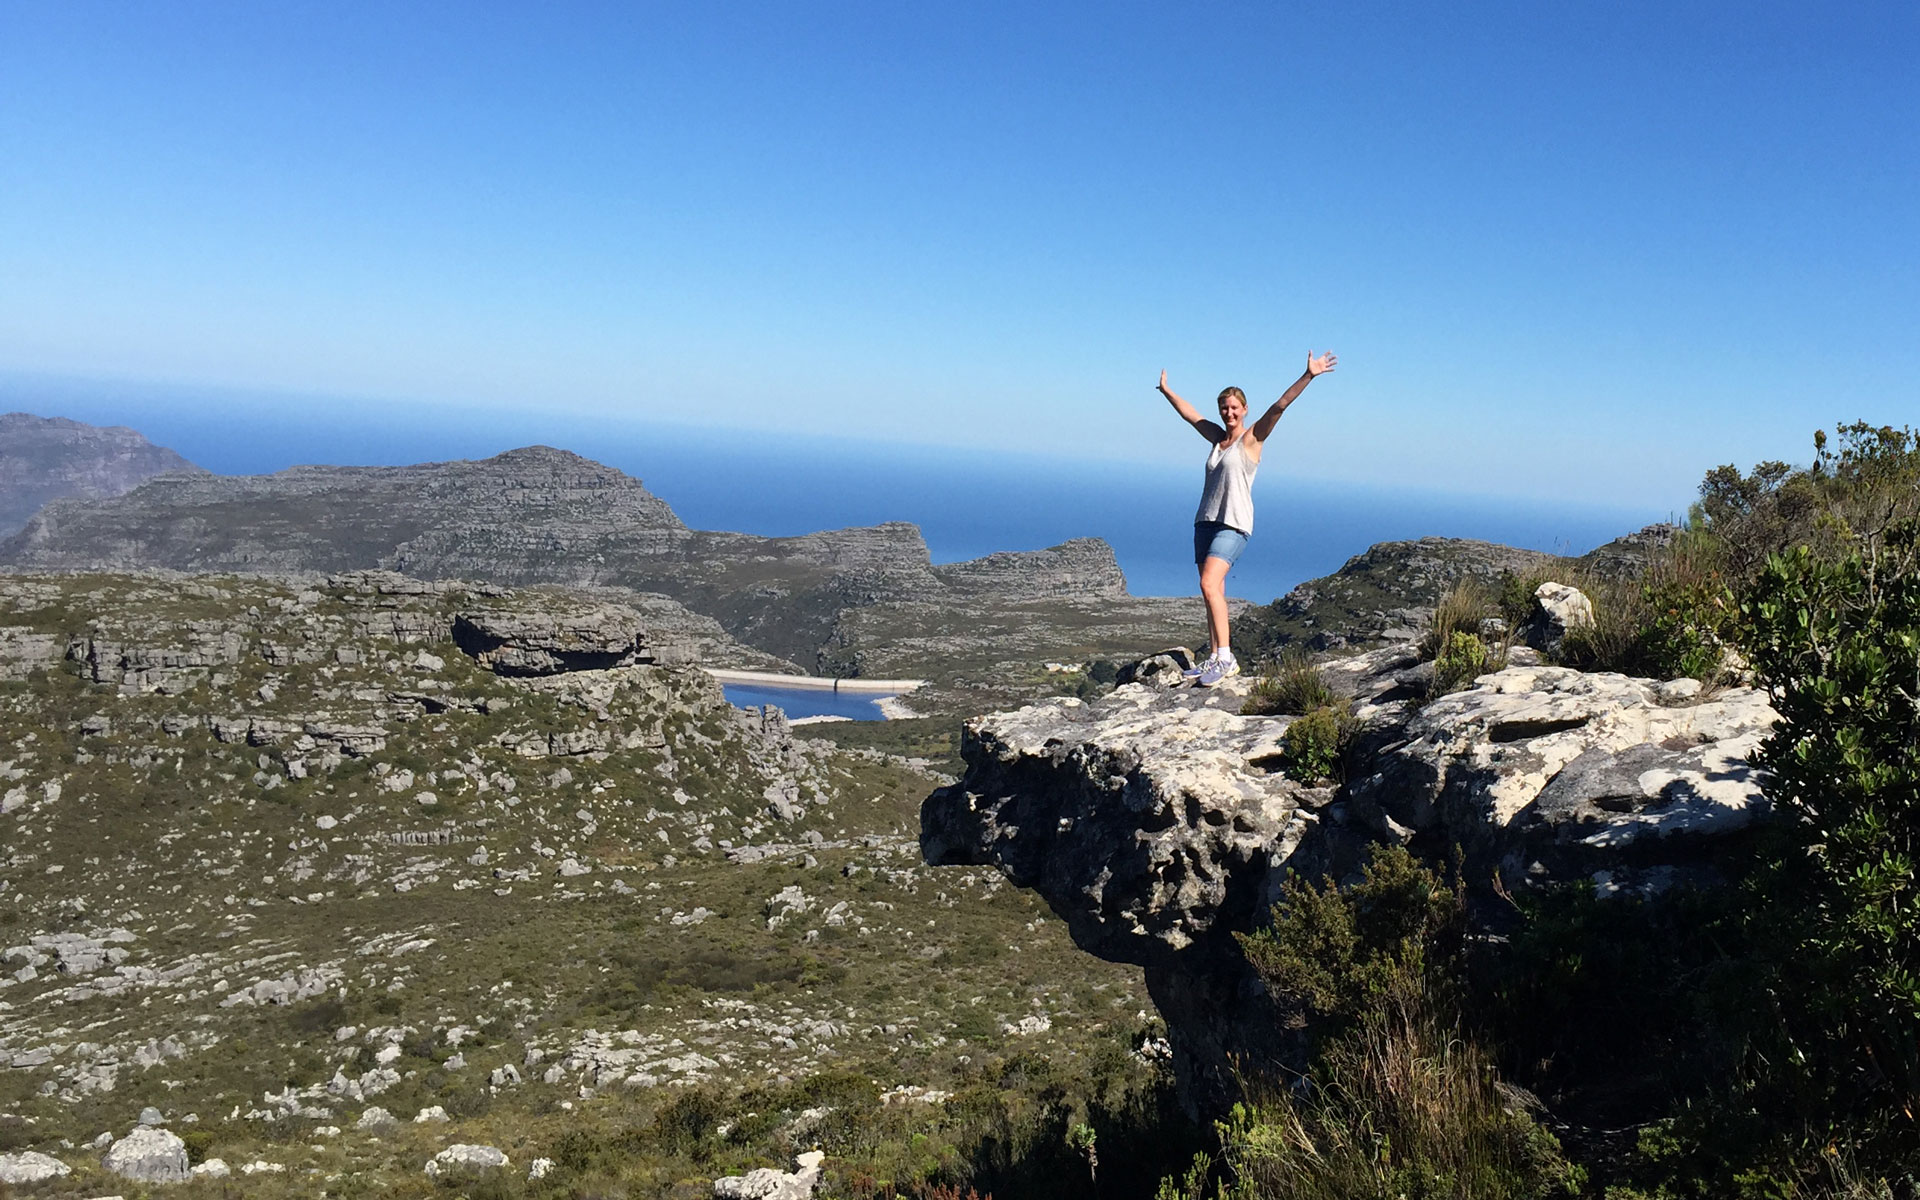 Reisebloggerin Barbara Freund steht auf einem Felsvorsprung des Tafelsbergs in Südafrika und reißt vor Freude die Arme in die Luft.